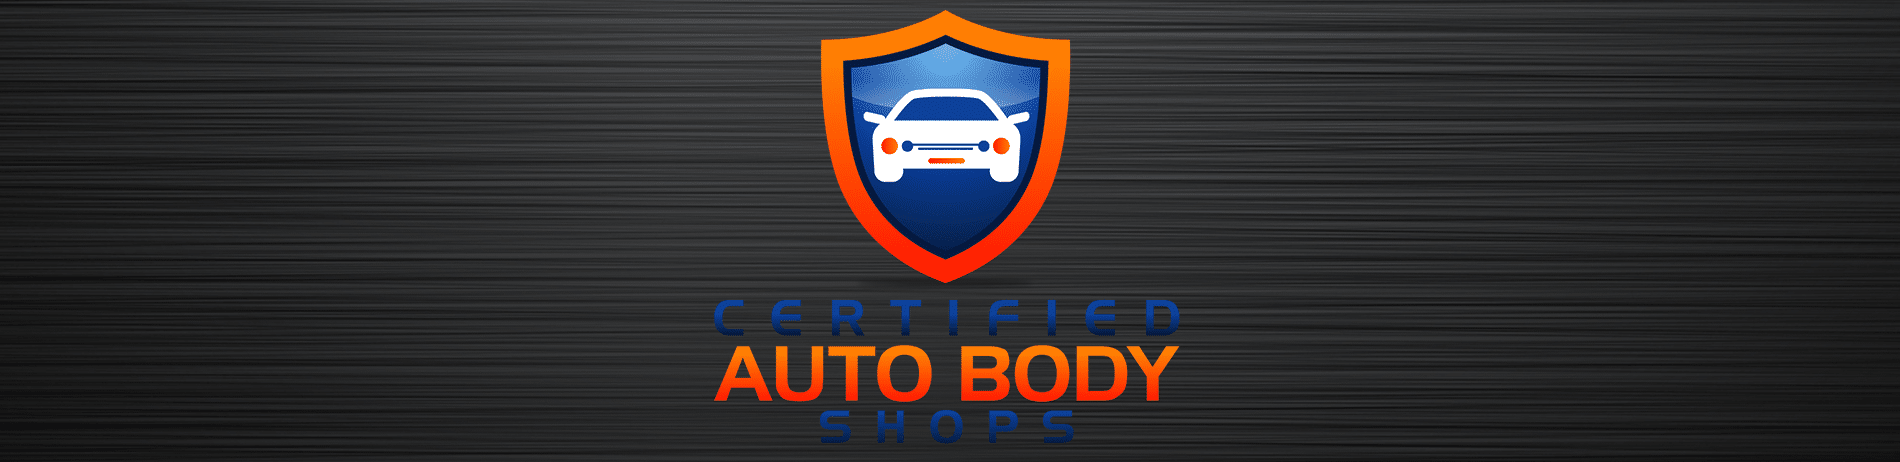 Subaru Certified Auto Body Shop 